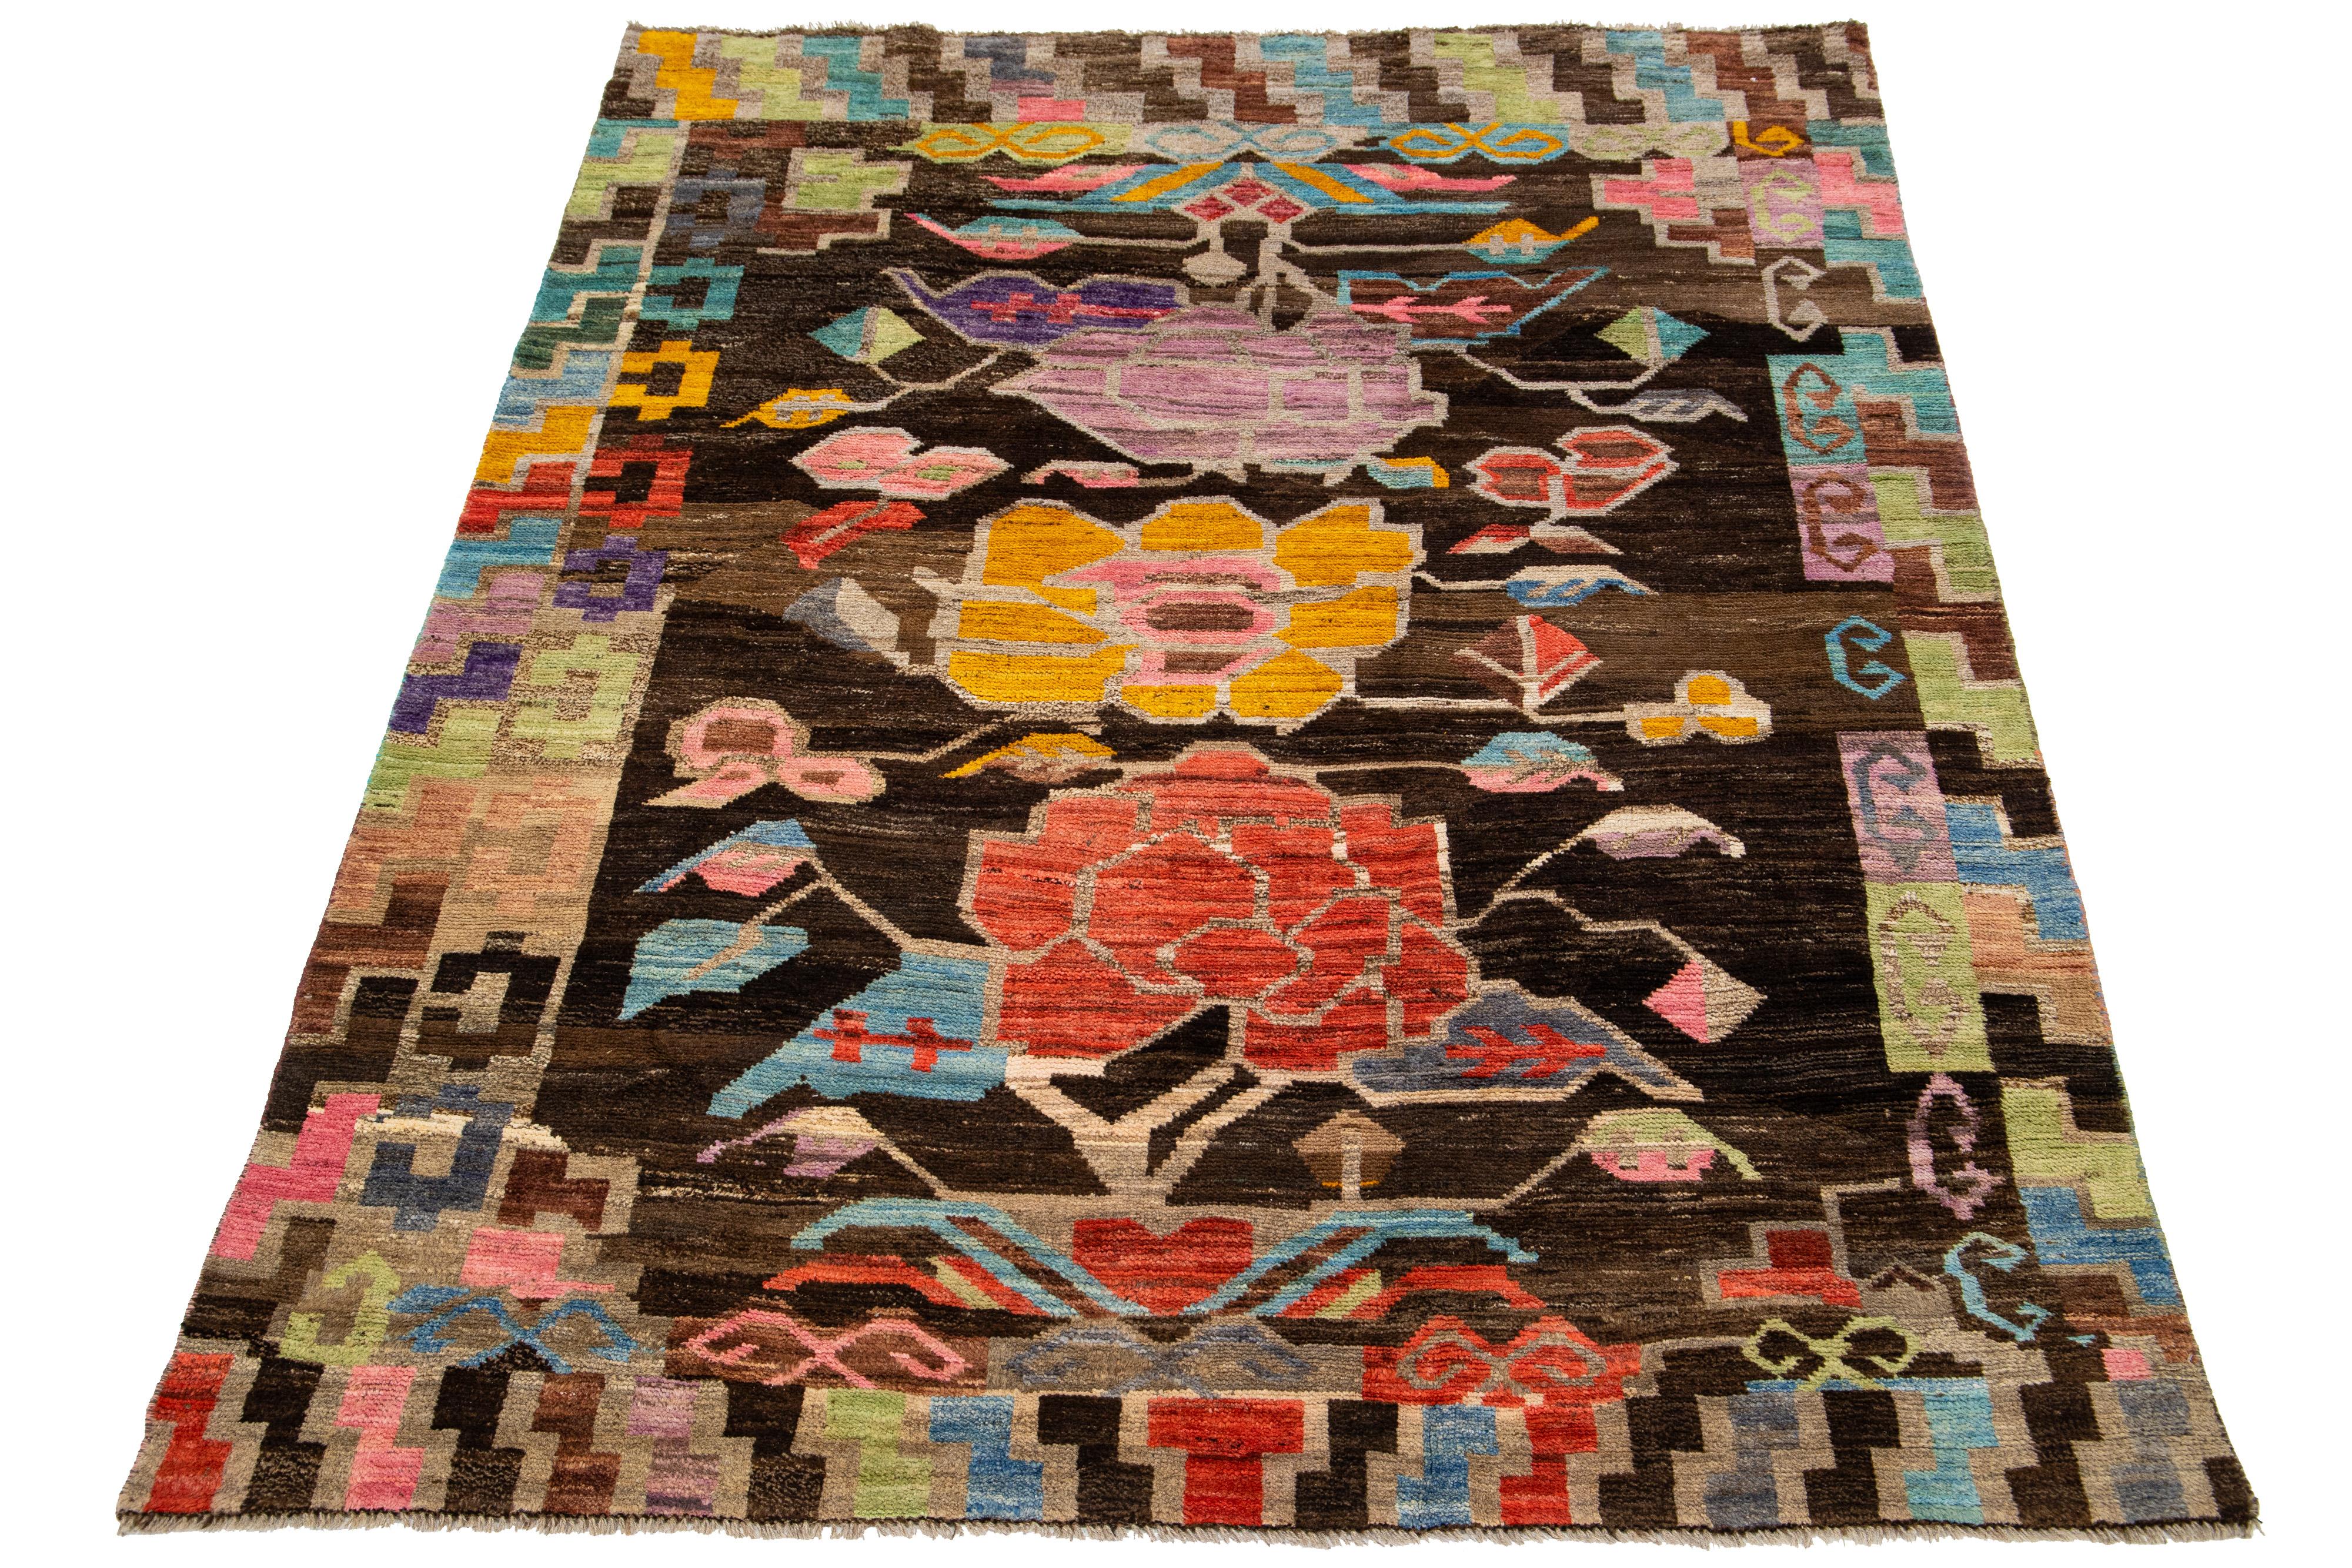 Ce tapis contemporain en laine de style marocain présente un champ de couleur marron captivant avec des fleurs multicolores façonnées dans un motif all-over.

Ce tapis mesure 5'8